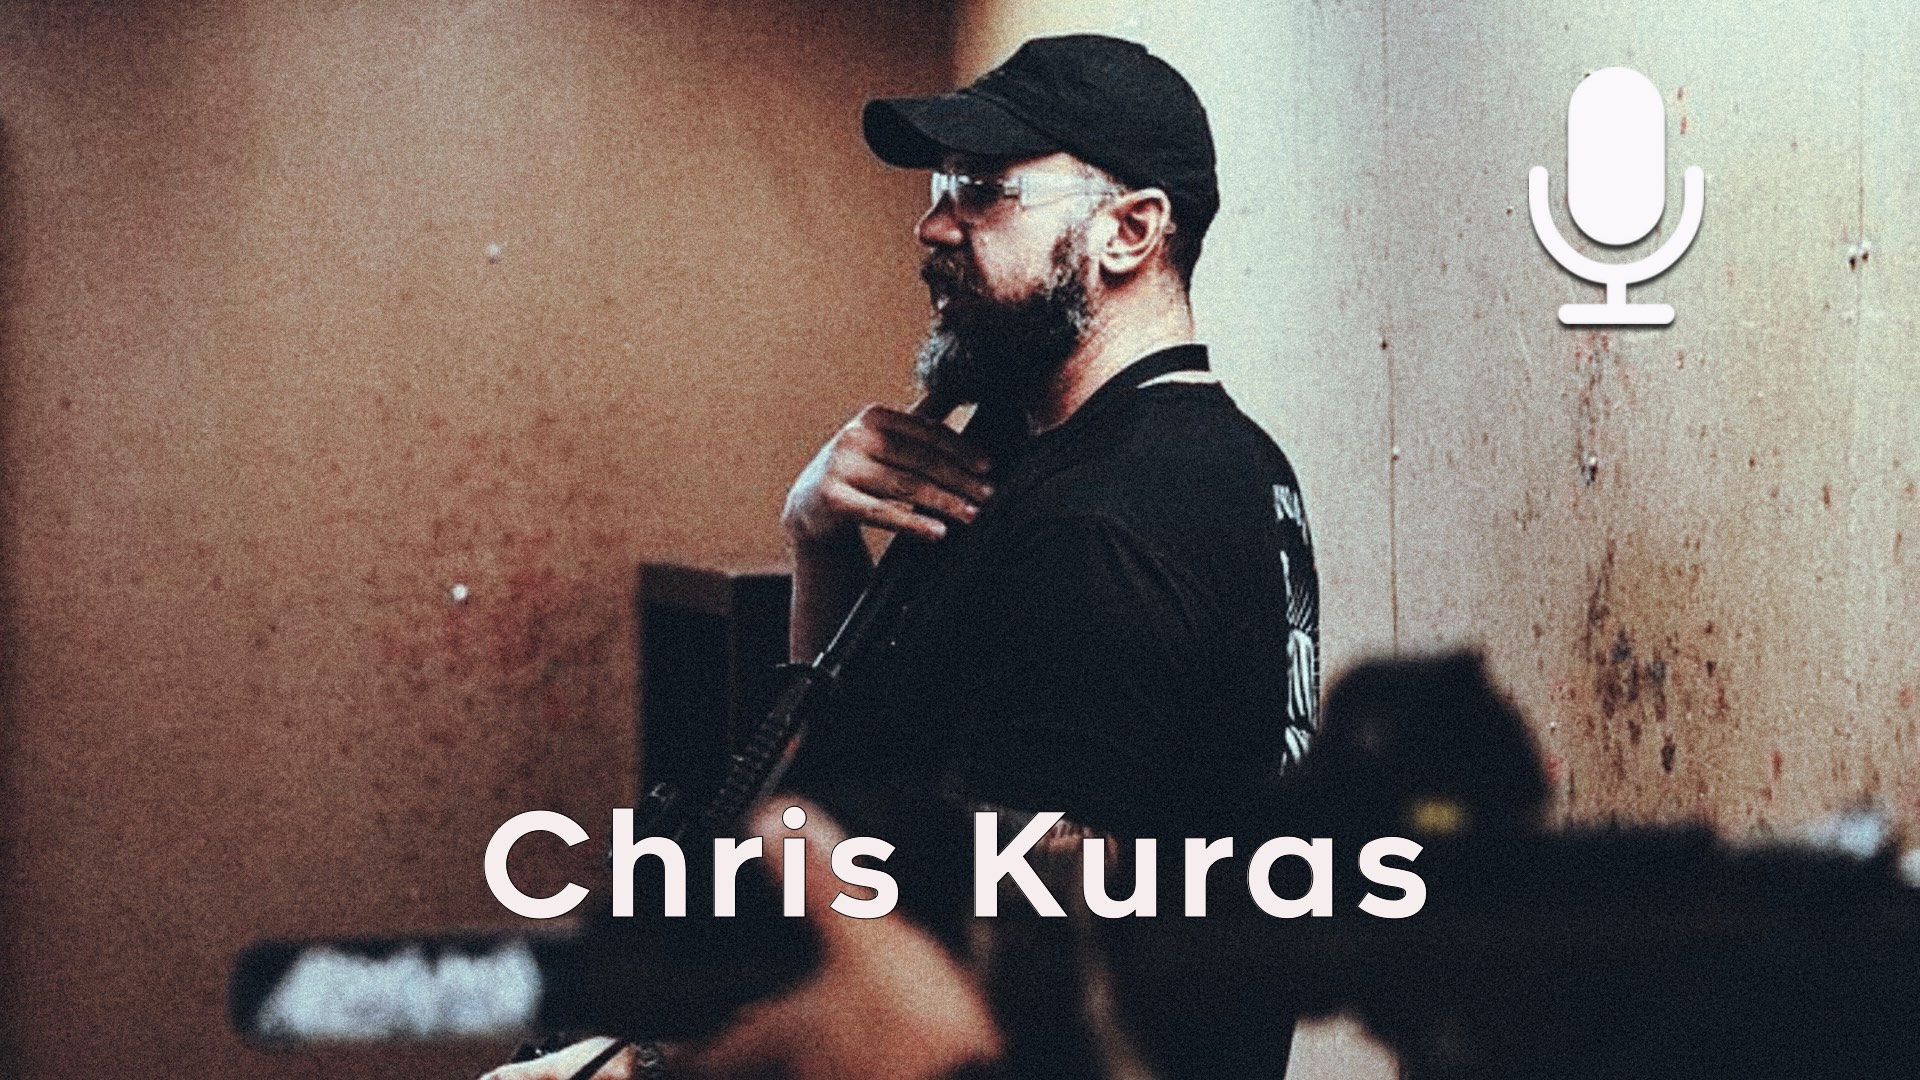 Chris Kuras – Tactical Human Performance